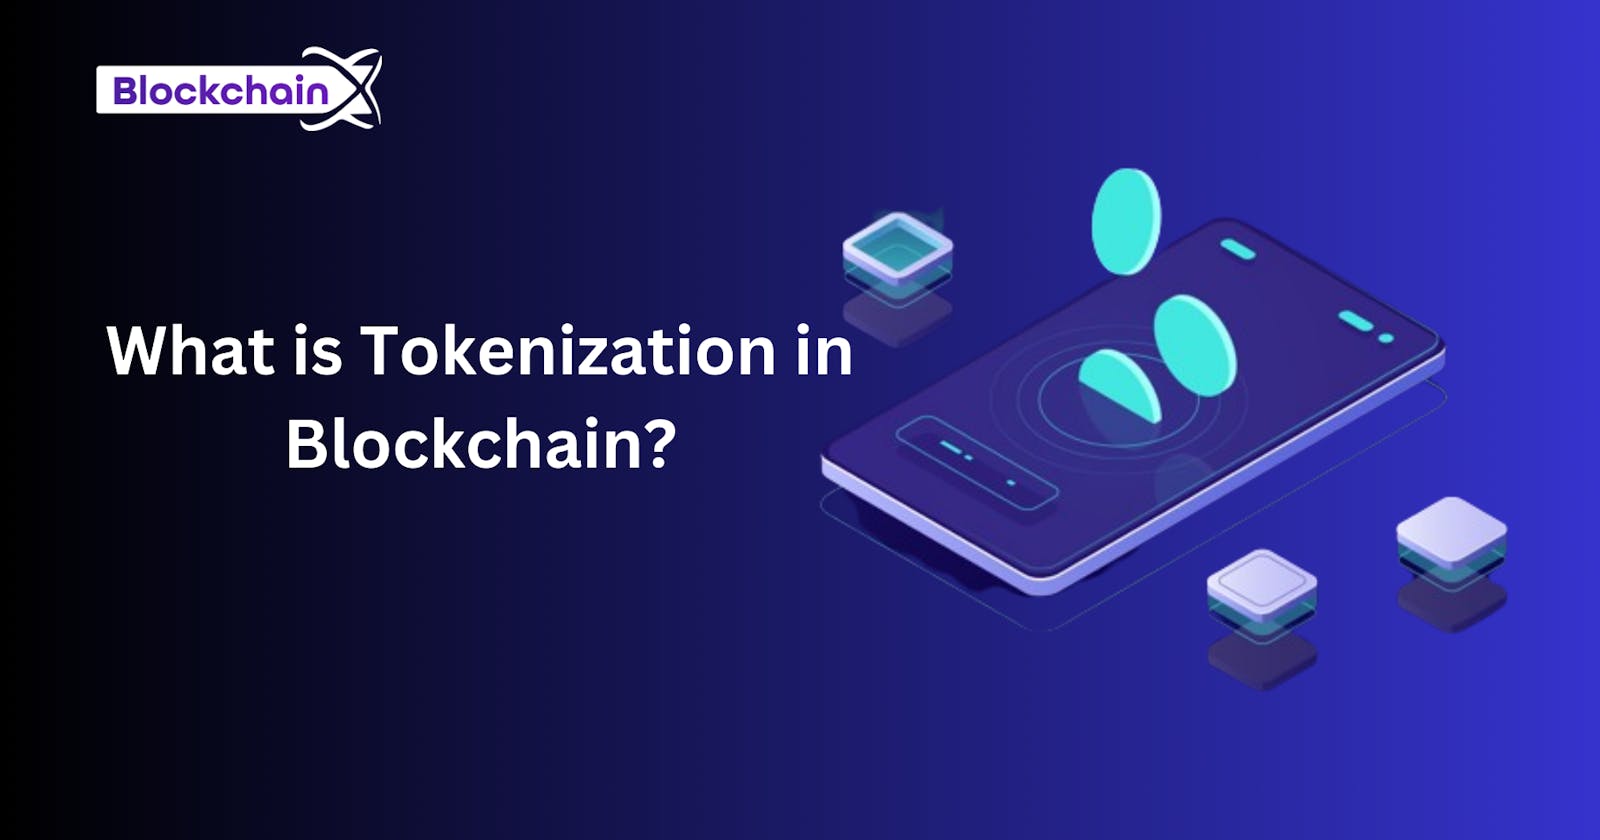 How Does Tokenization Work in Blockchain?